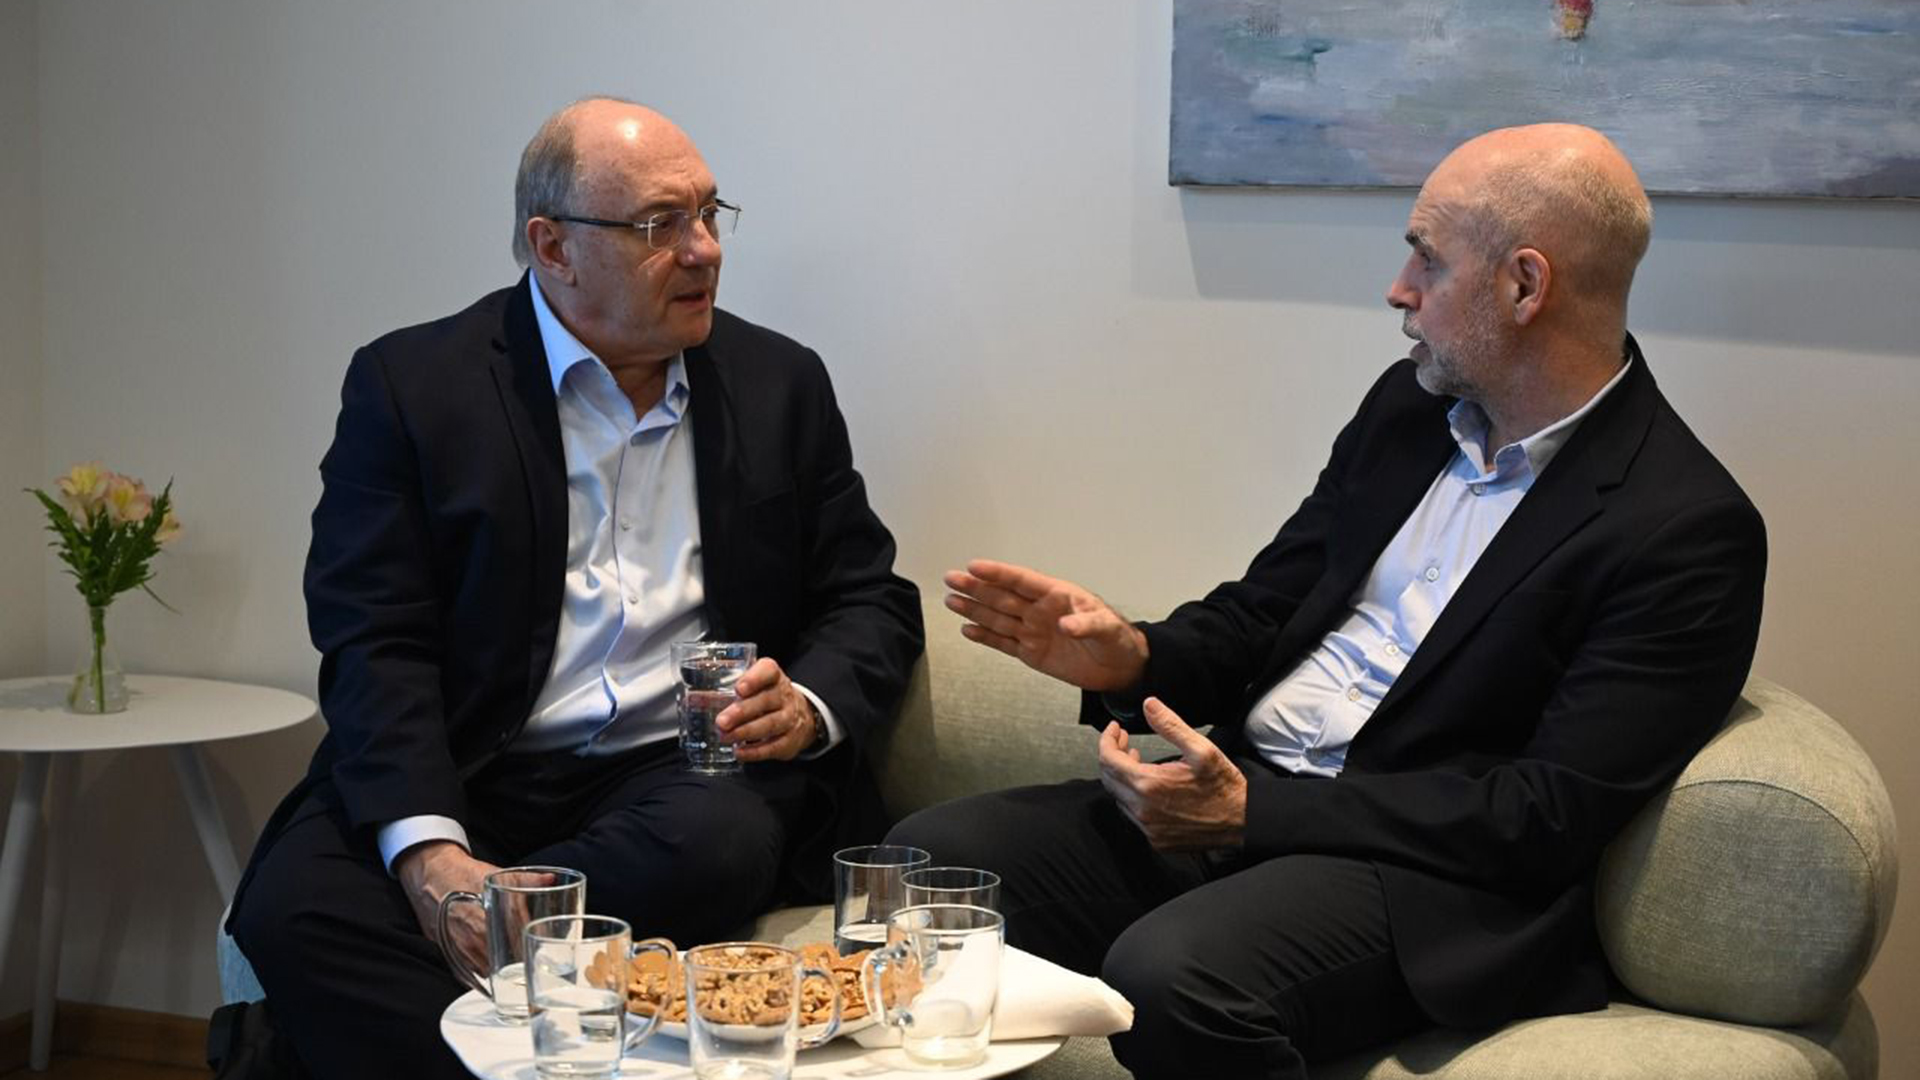 El jefe de Gobierno junto a Leonardo Leiderman, profesor de la Universidad de Tel Aviv y asesor económico jefe del Bank Hapoalim. En el encuentro también estuvieron Straface y Francisco Resnicoff.